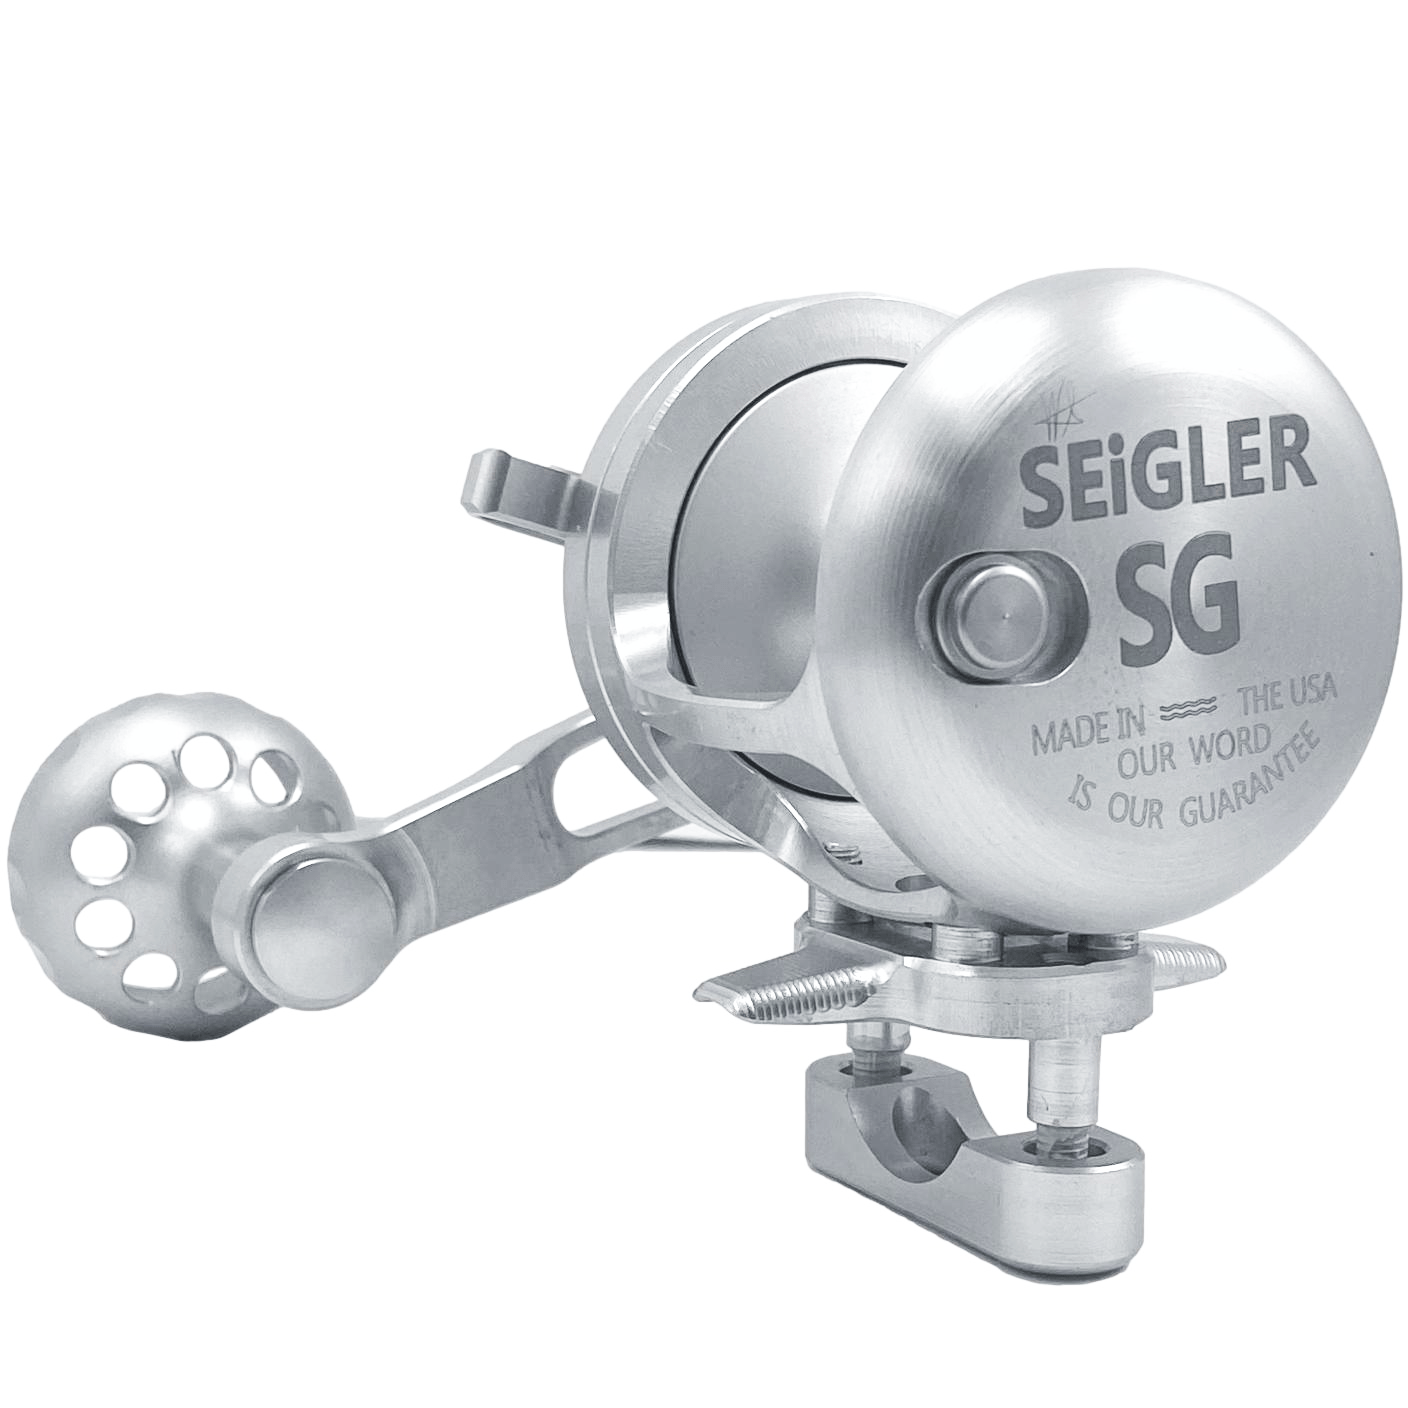 /cdn/shop/products/Seigler_SG_Sil